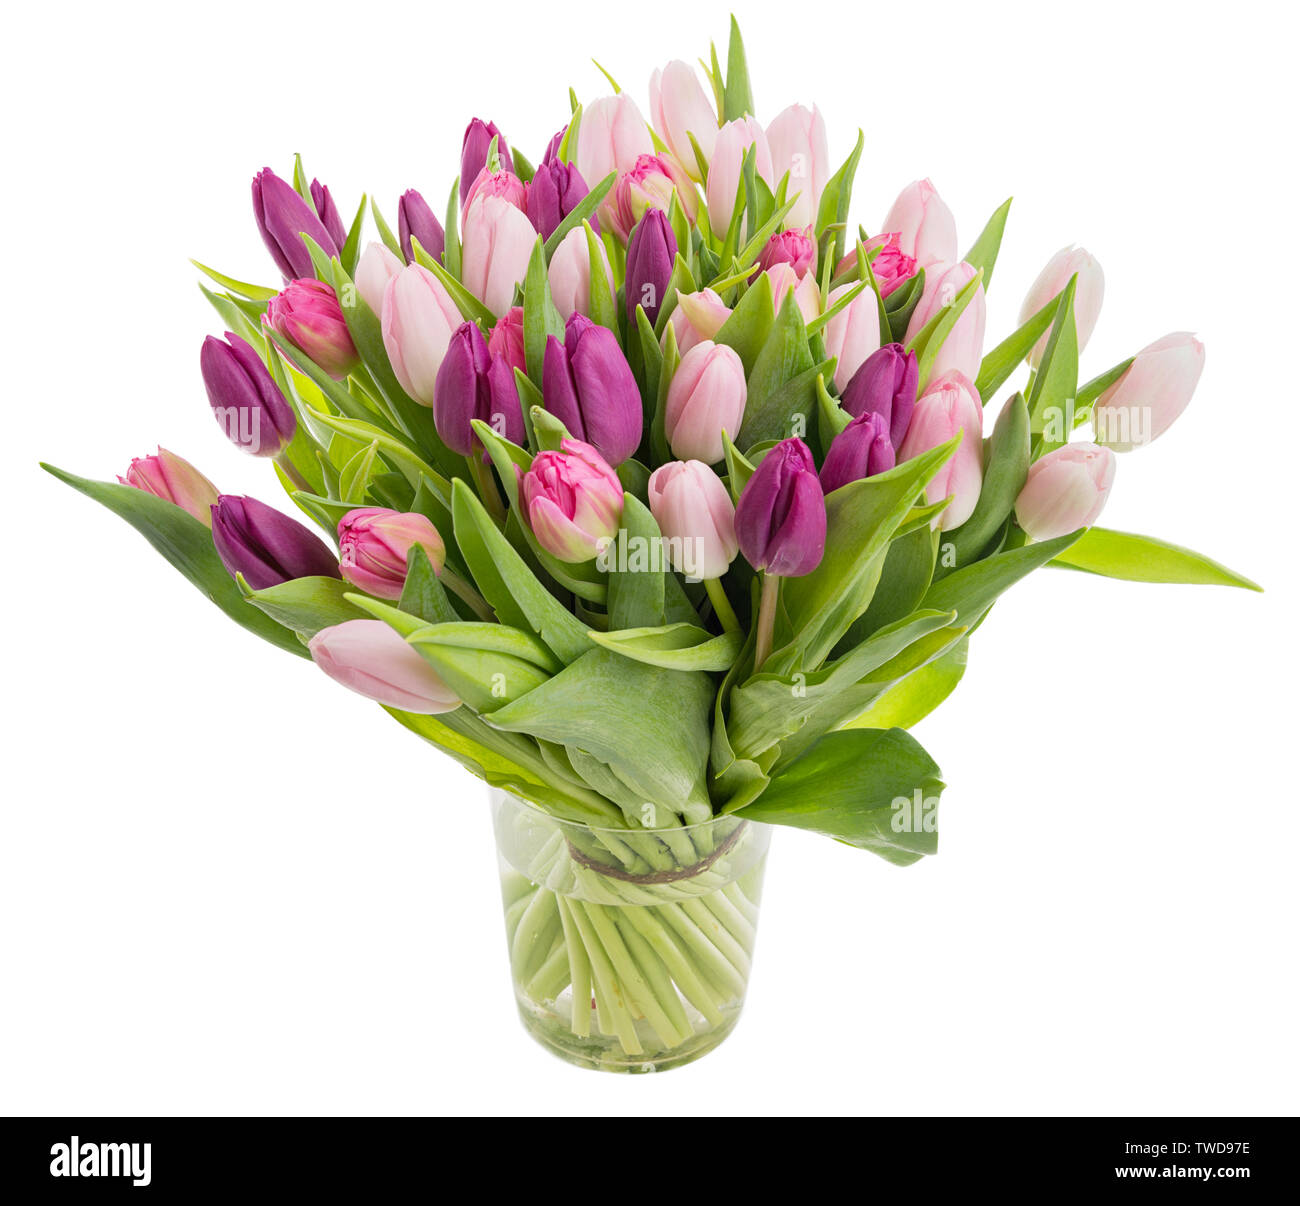 Große Haufen Schöne Tulpe Blumen in einer Glasvase auf weißem Hintergrund Stockfoto